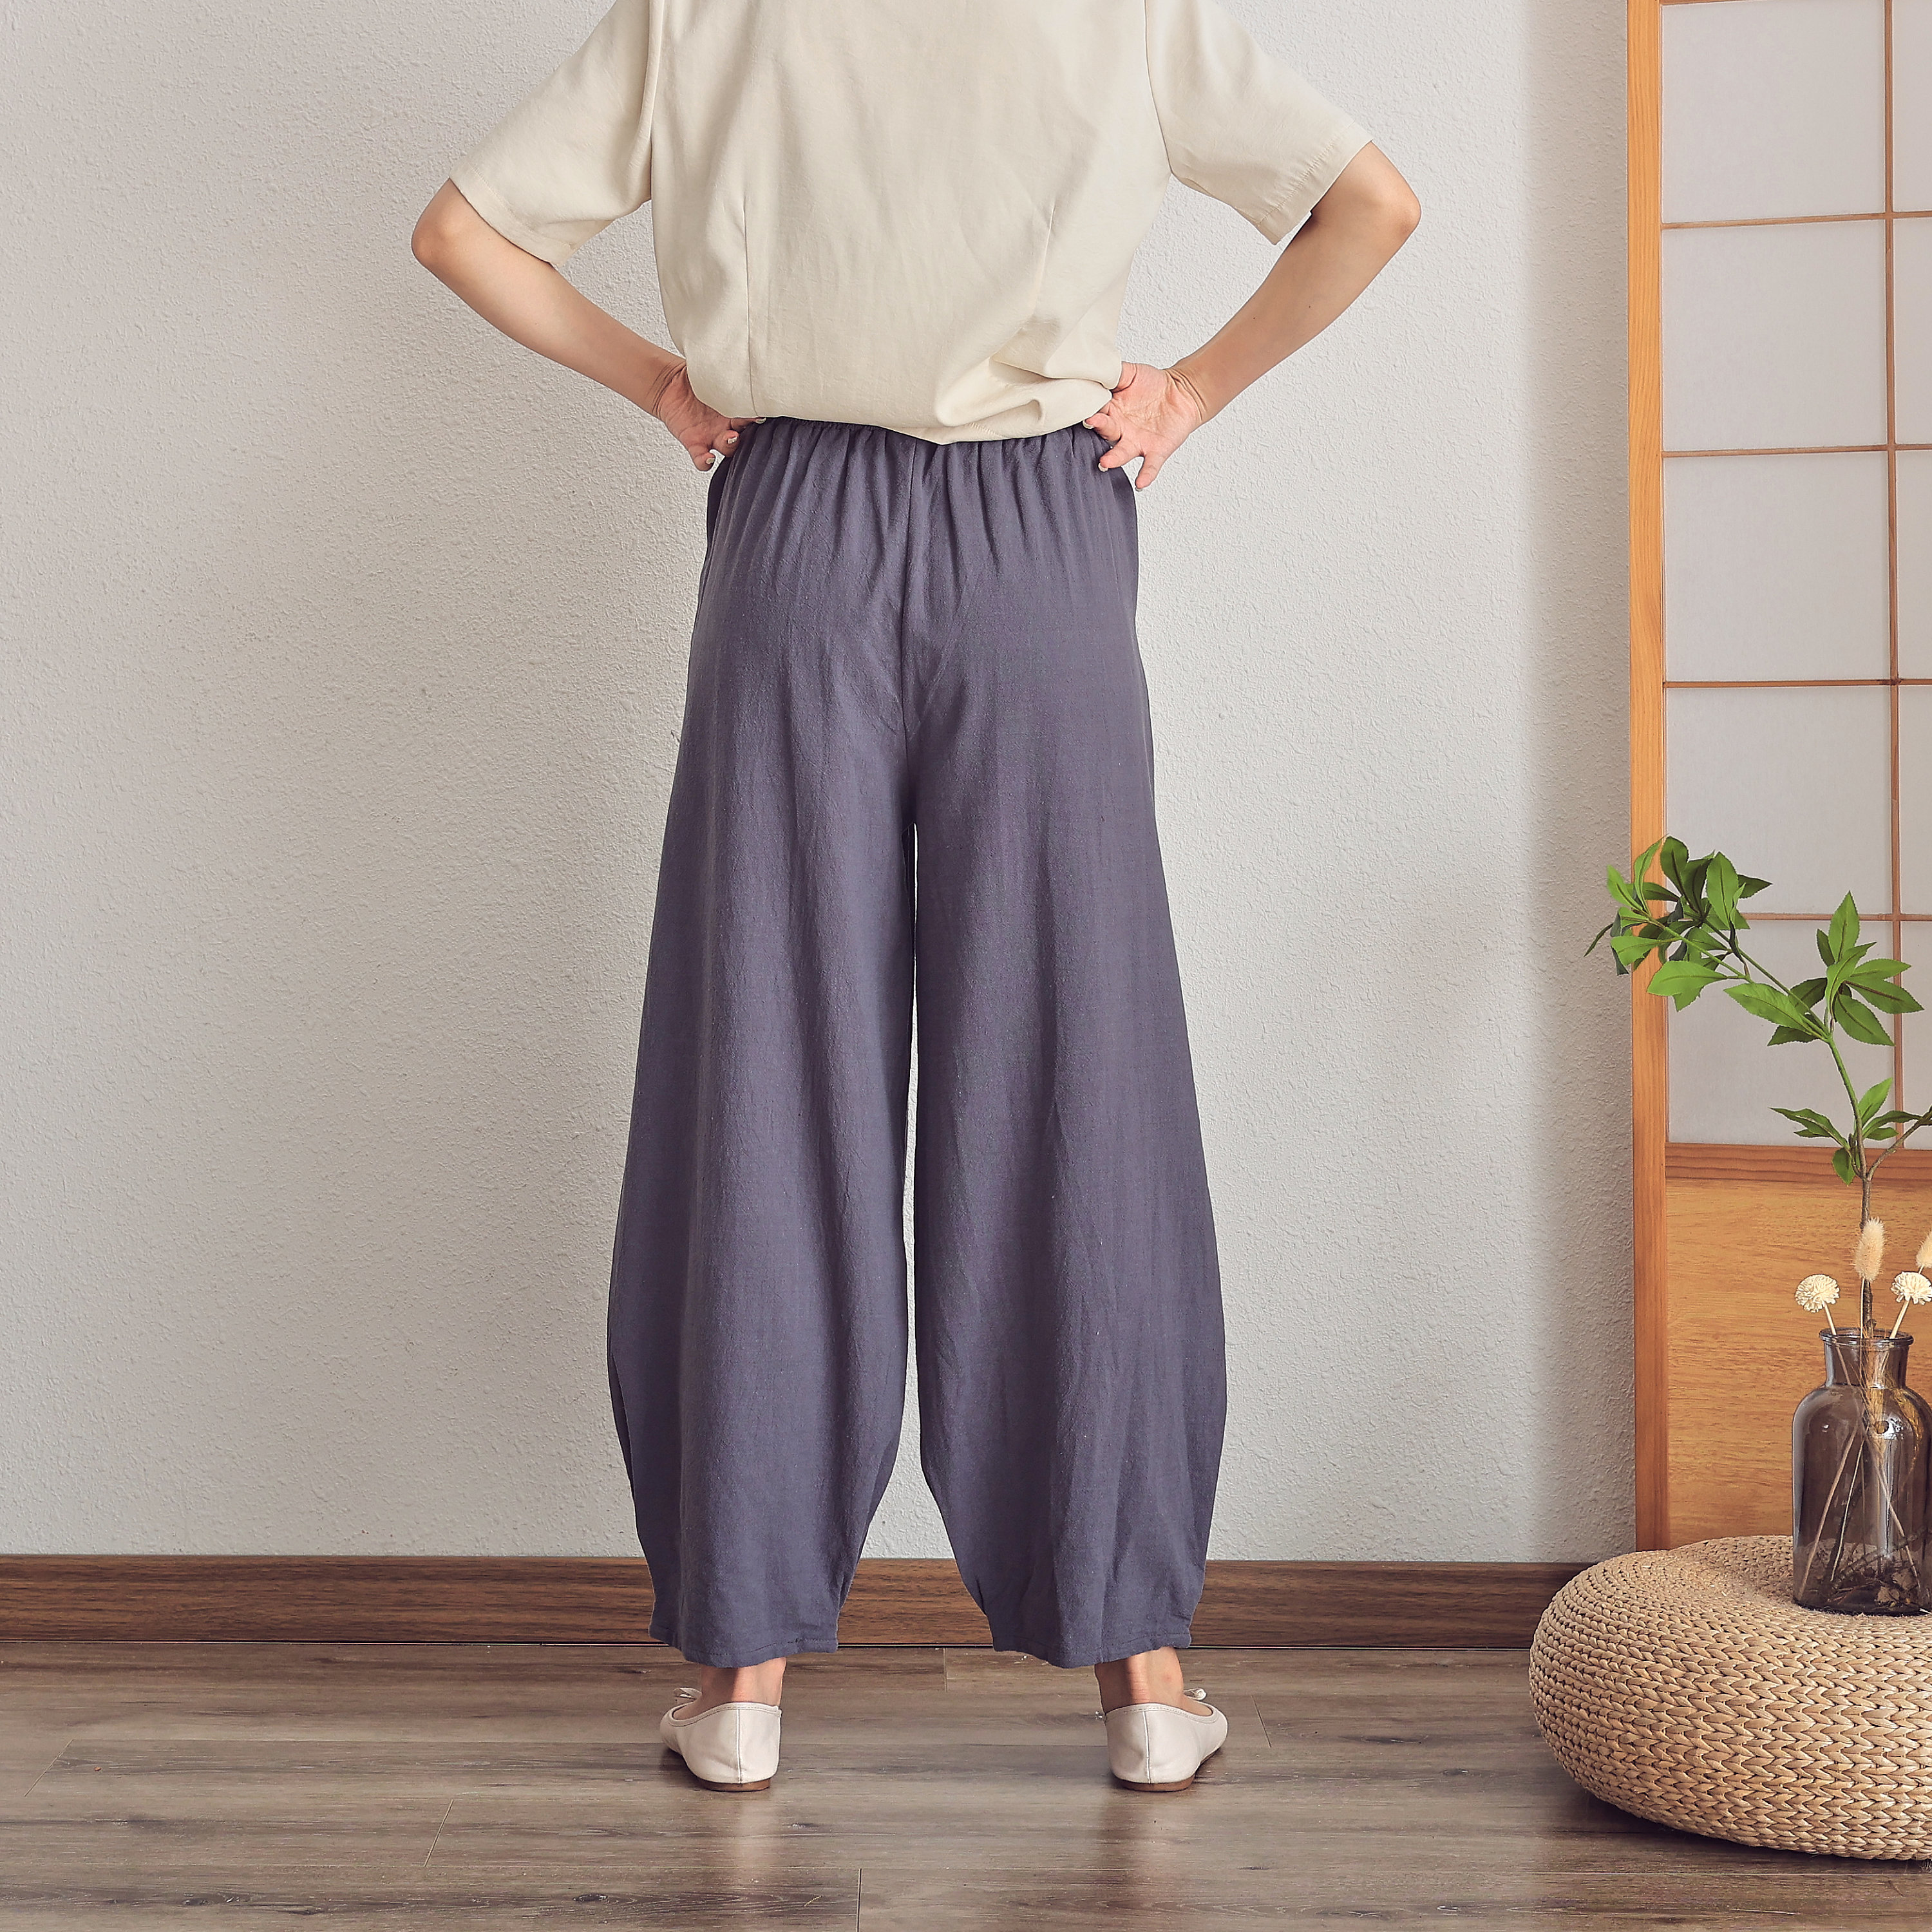 Women's Summer Boho Pants Print Loose Linen Elastic Waist Trousers